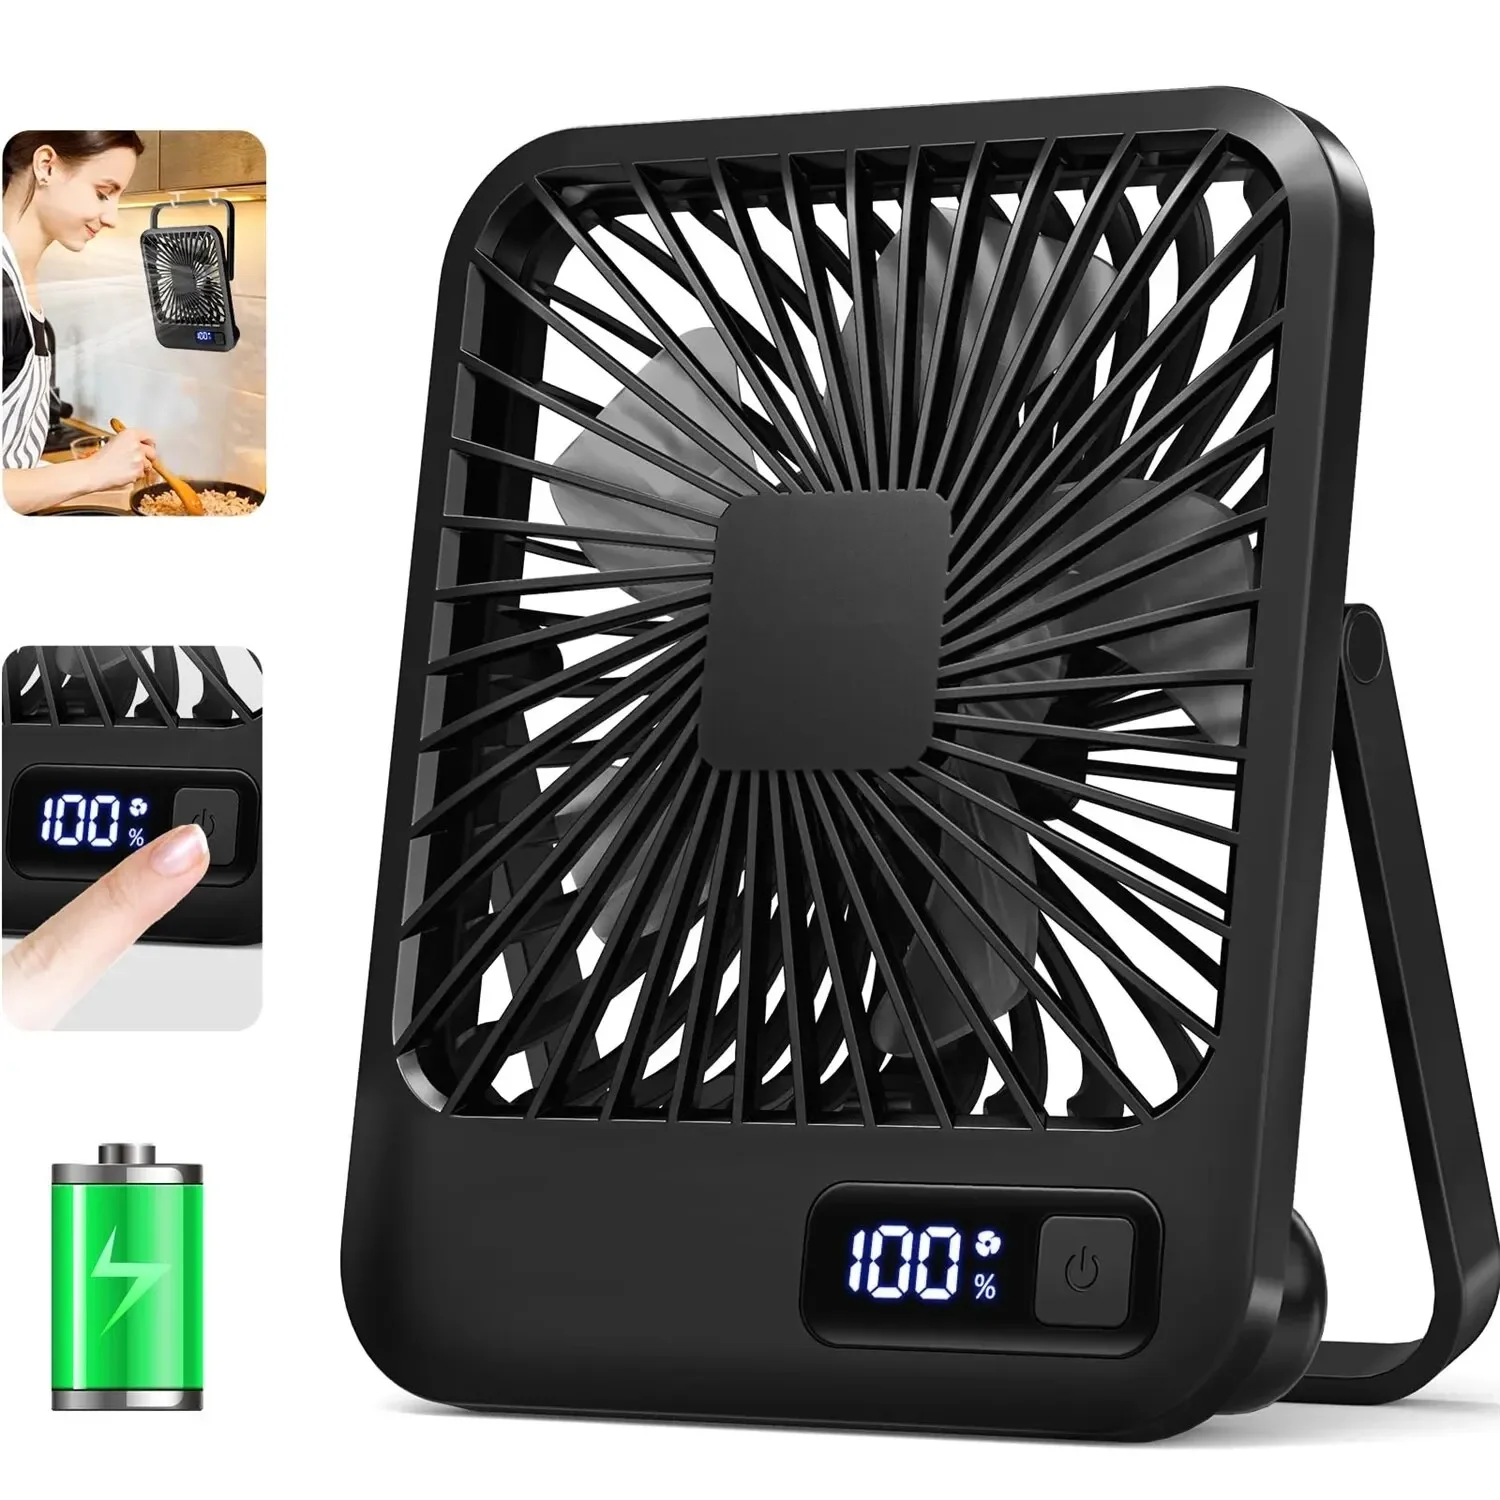 

Desk Fan, Portable USB Rechargeable Fan, 180° Tilt Folding Personal Fan With Power Display, 5 Speeds Ultra Quiet Table Fan